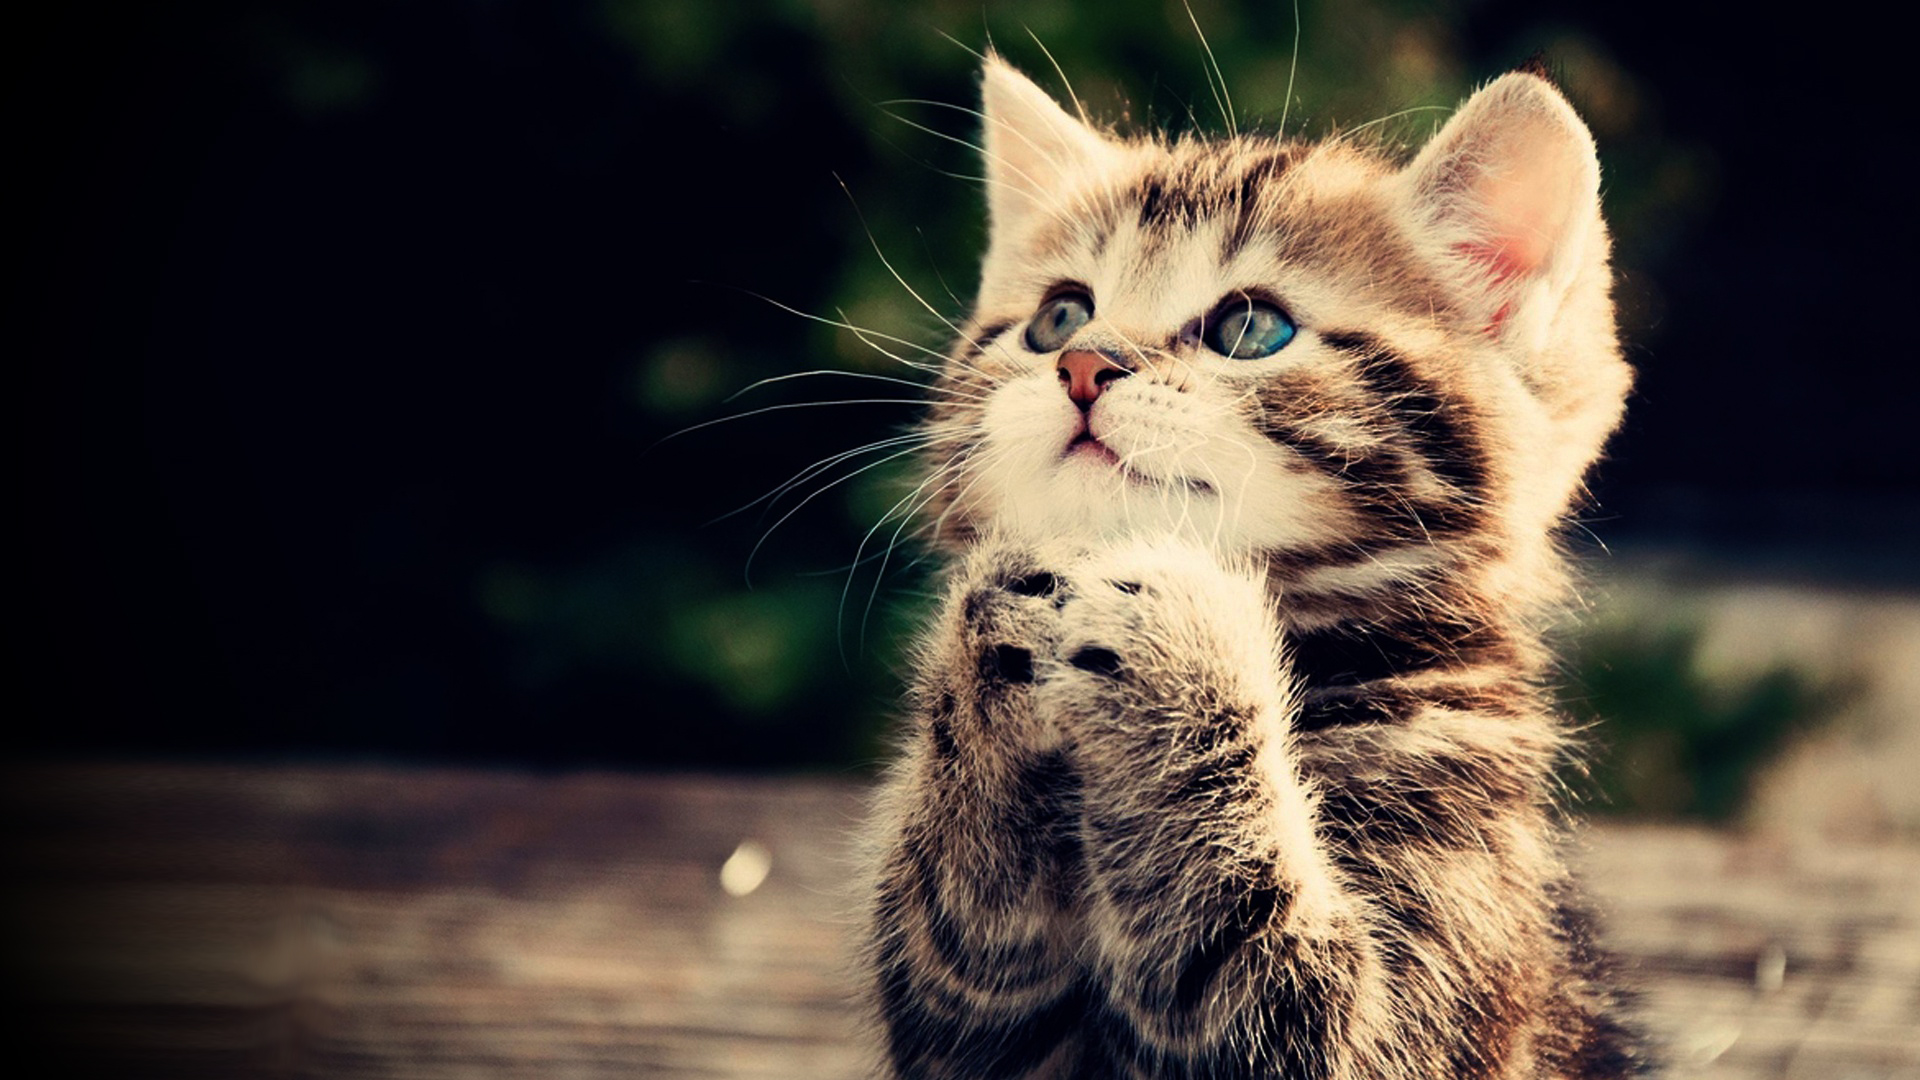 cat full hd wallpaper praying kitten cute animal picture 1080p